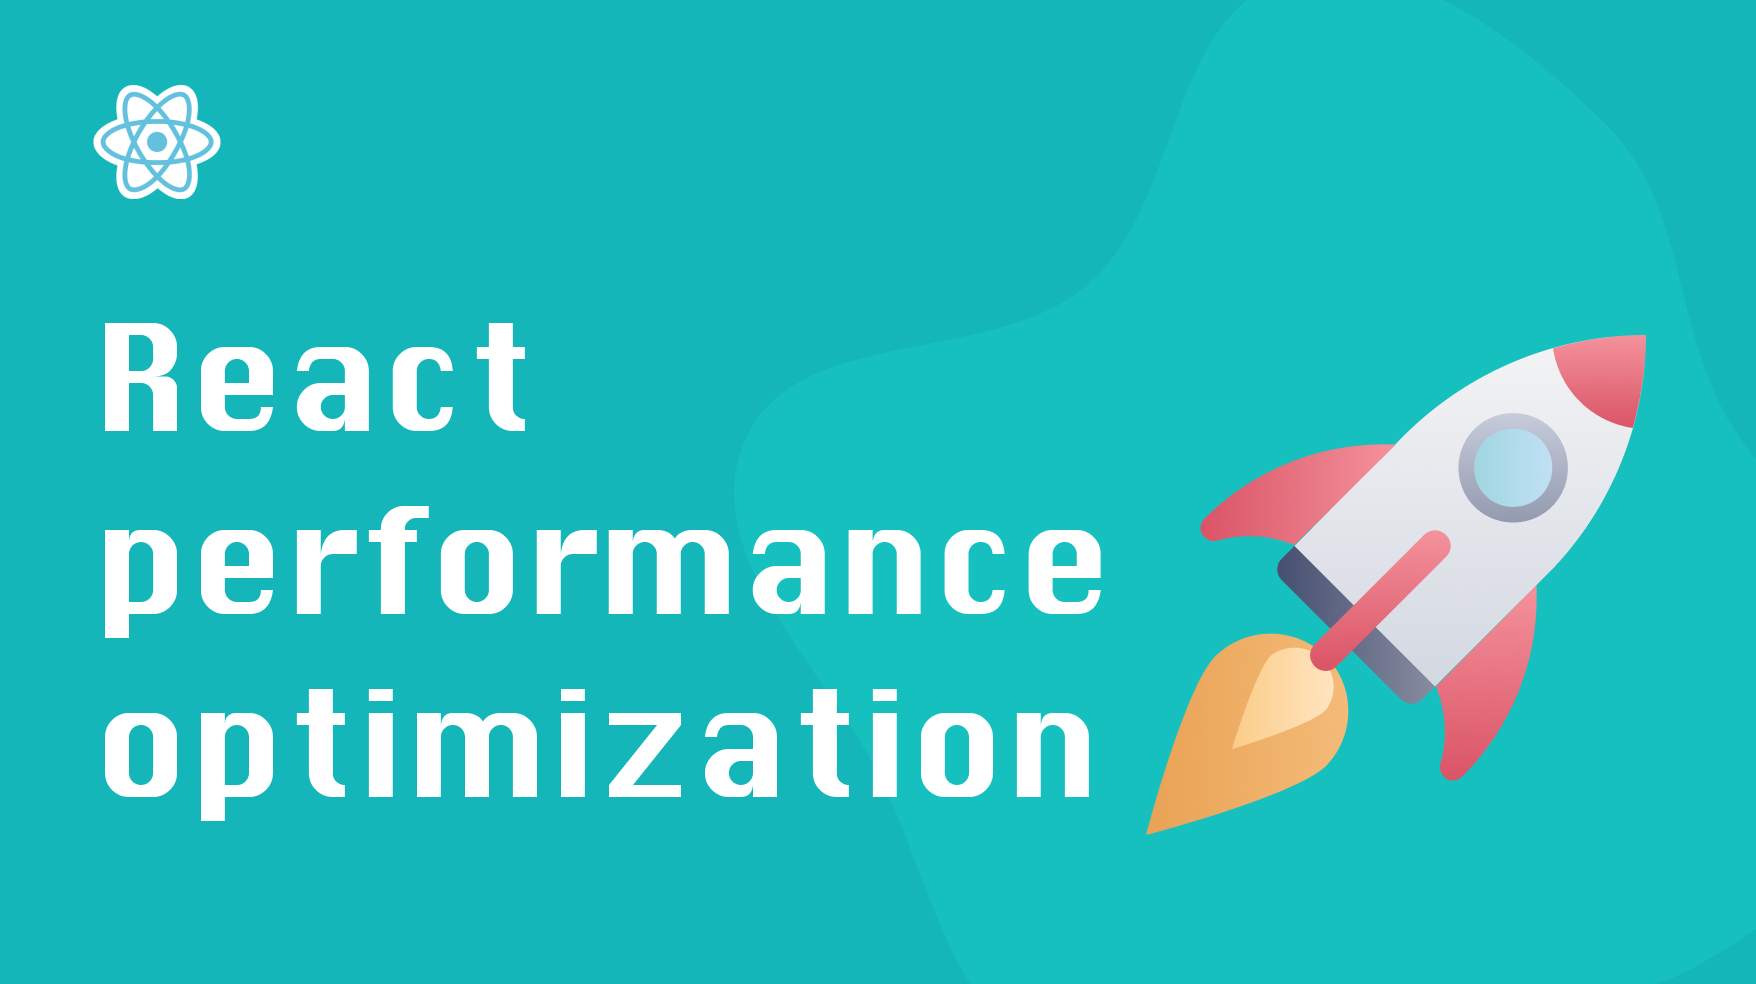 https://isamatov.com/images/react-optimizing-performance/React%20performance%20optimization.png